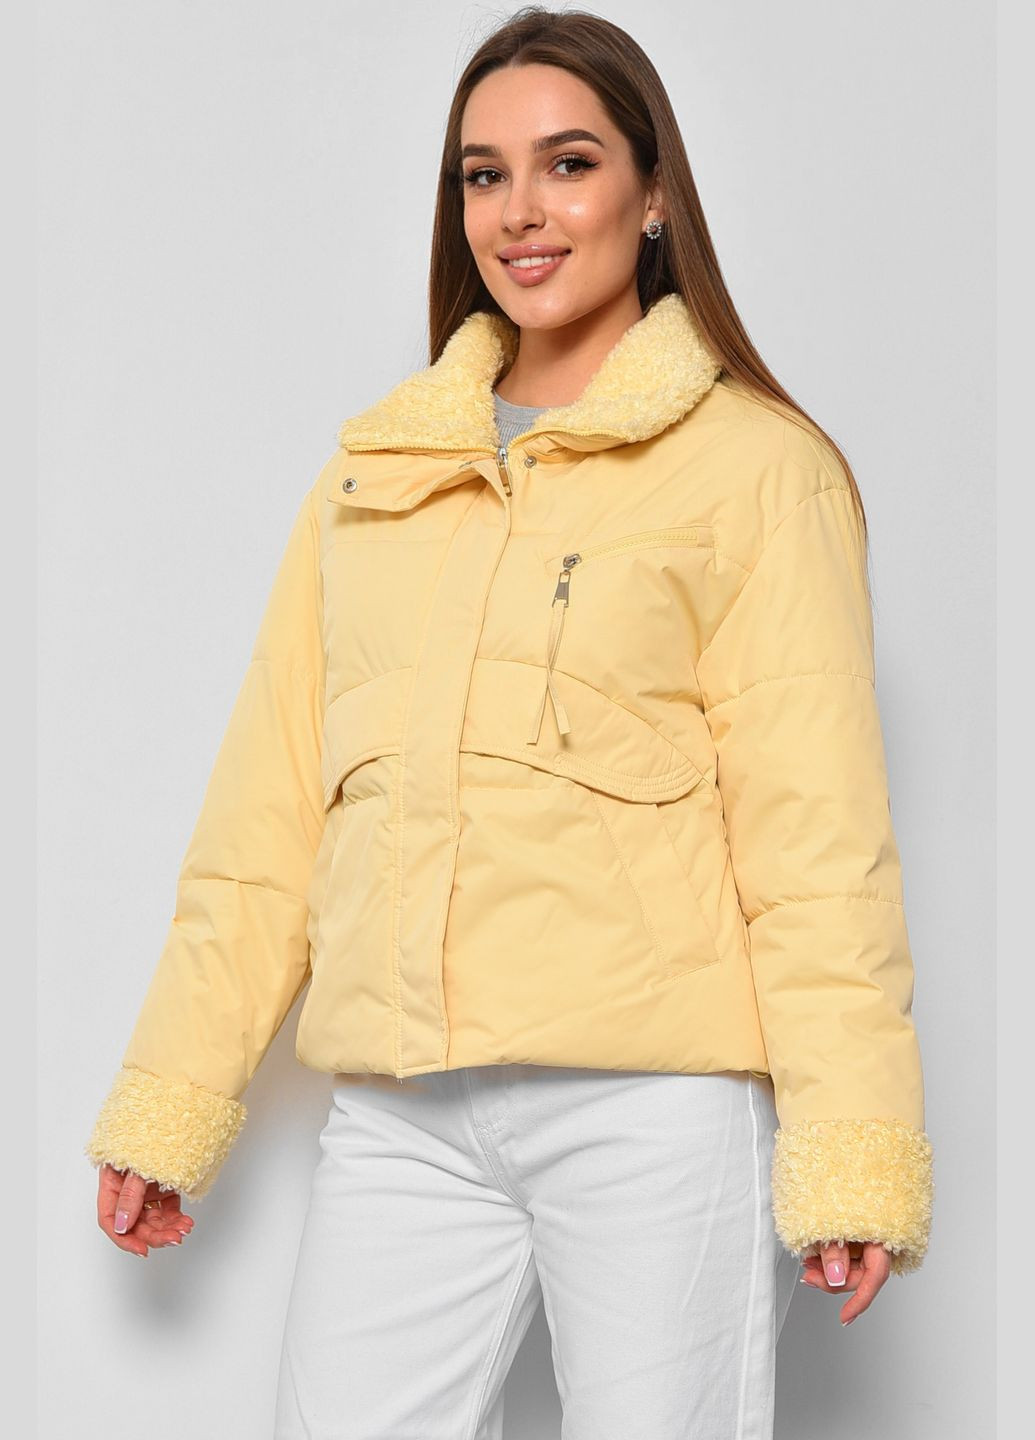 Жовта демісезонна куртка жіноча демісезонна жовтого кольору Let's Shop